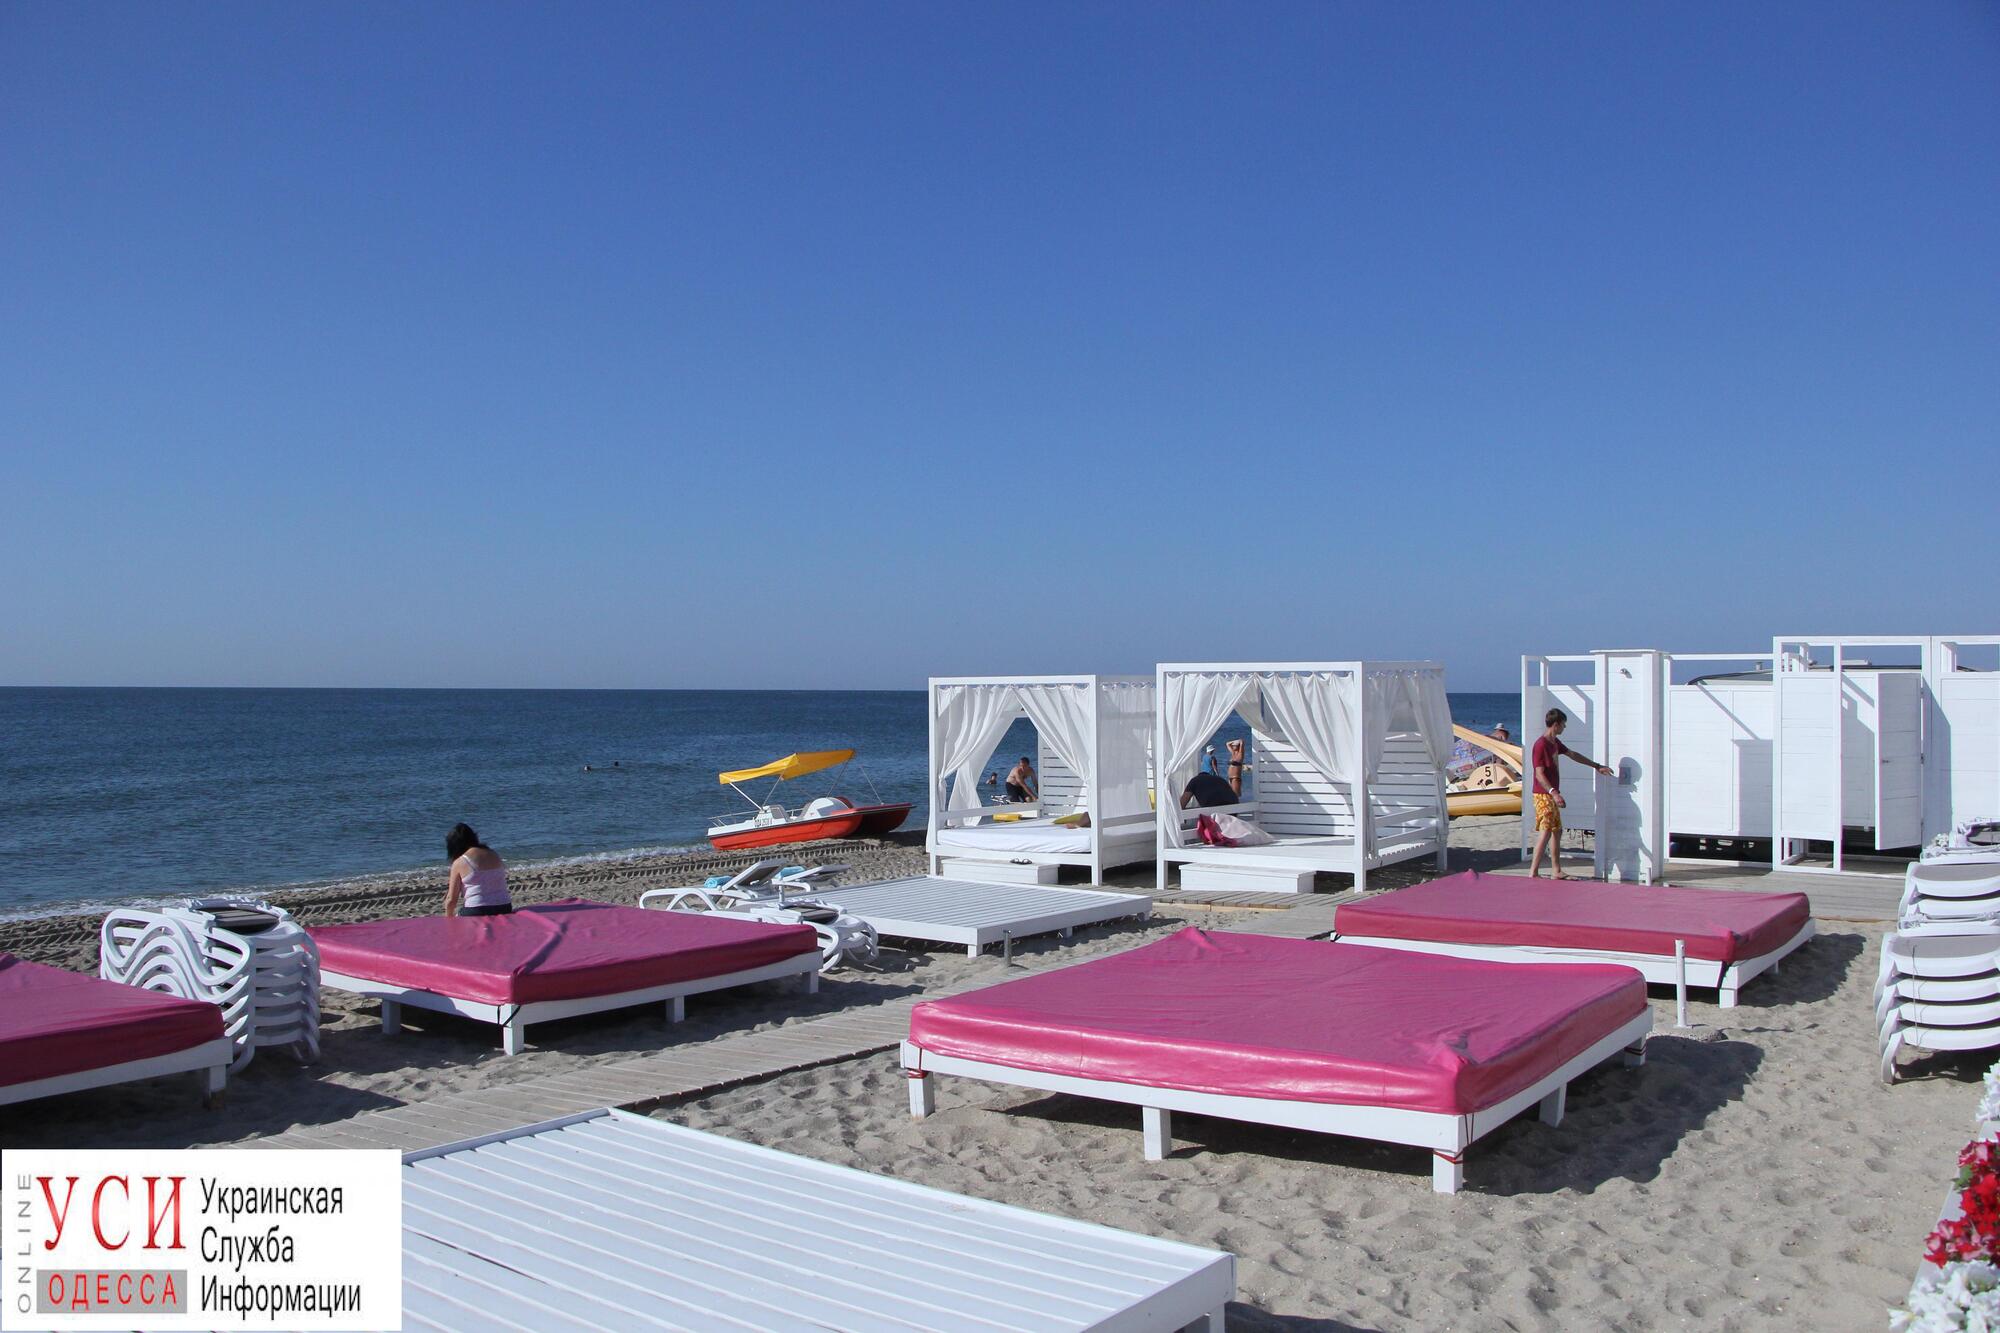 Как проходит курортный сезон в Затоке: цены, жилье и пляжи